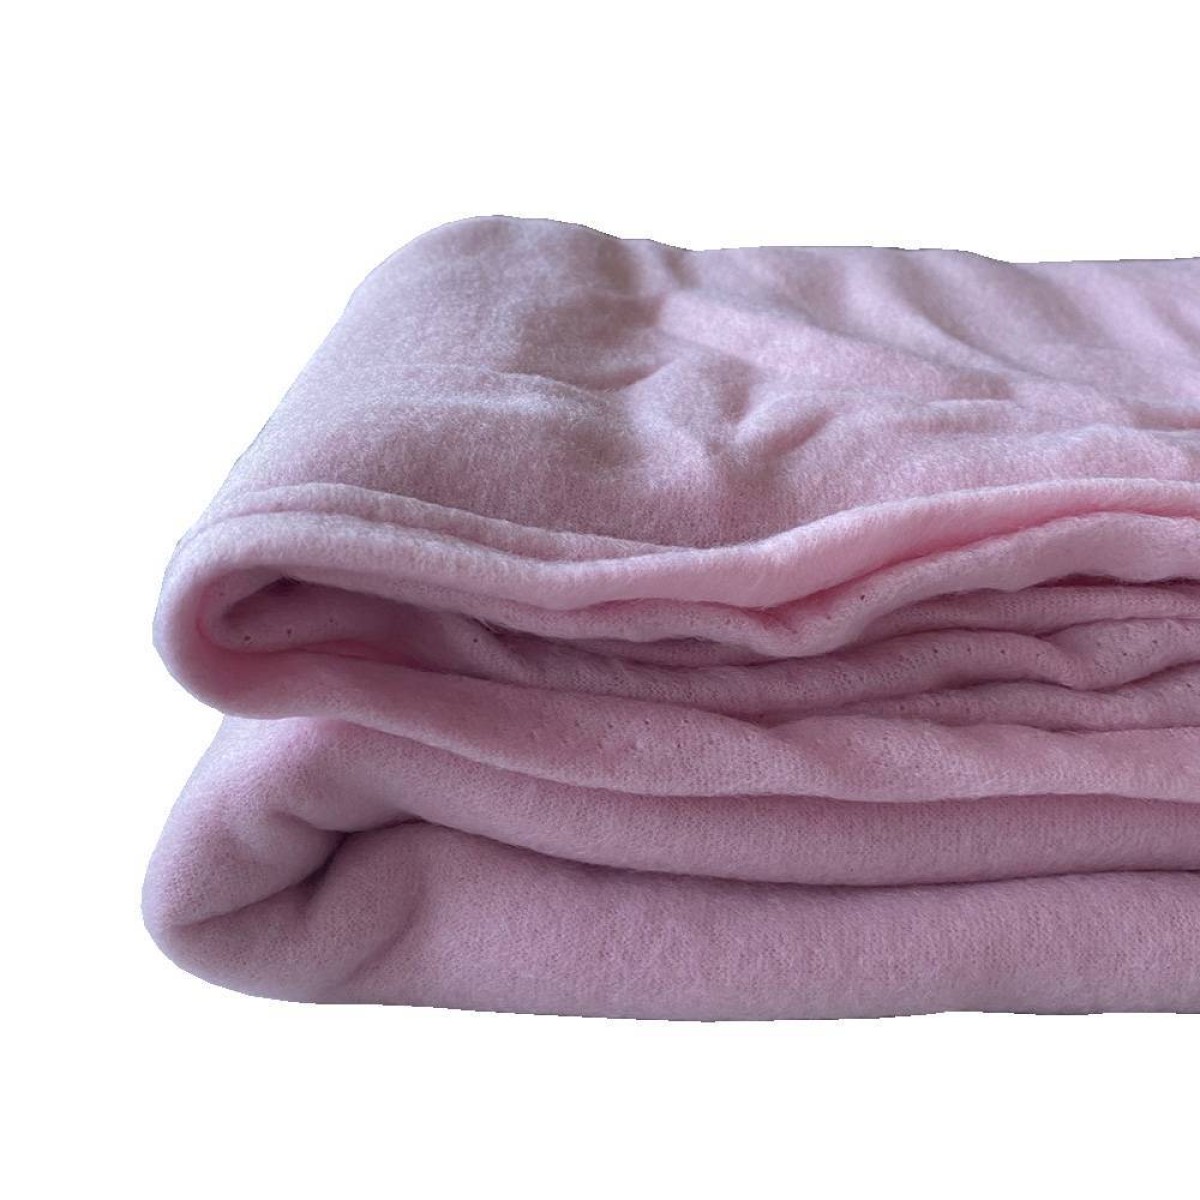 Κουβέρτα Fleece Διπλή 200x220cm ροζ χρώμα TNS 39-950-2071-3